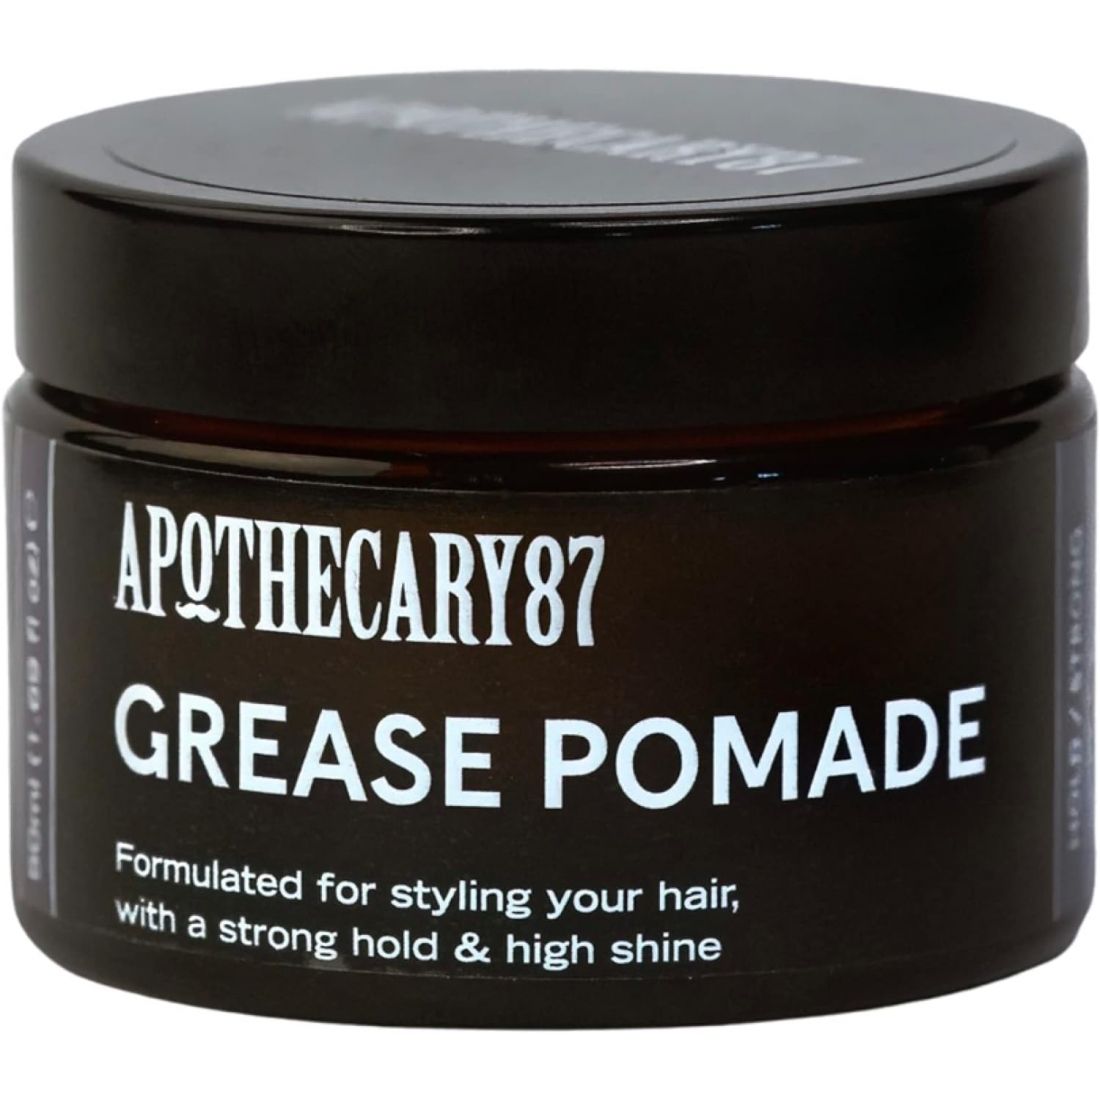 Apothecary 87 - Pomade de Cheveux 'Grease' - 50 ml